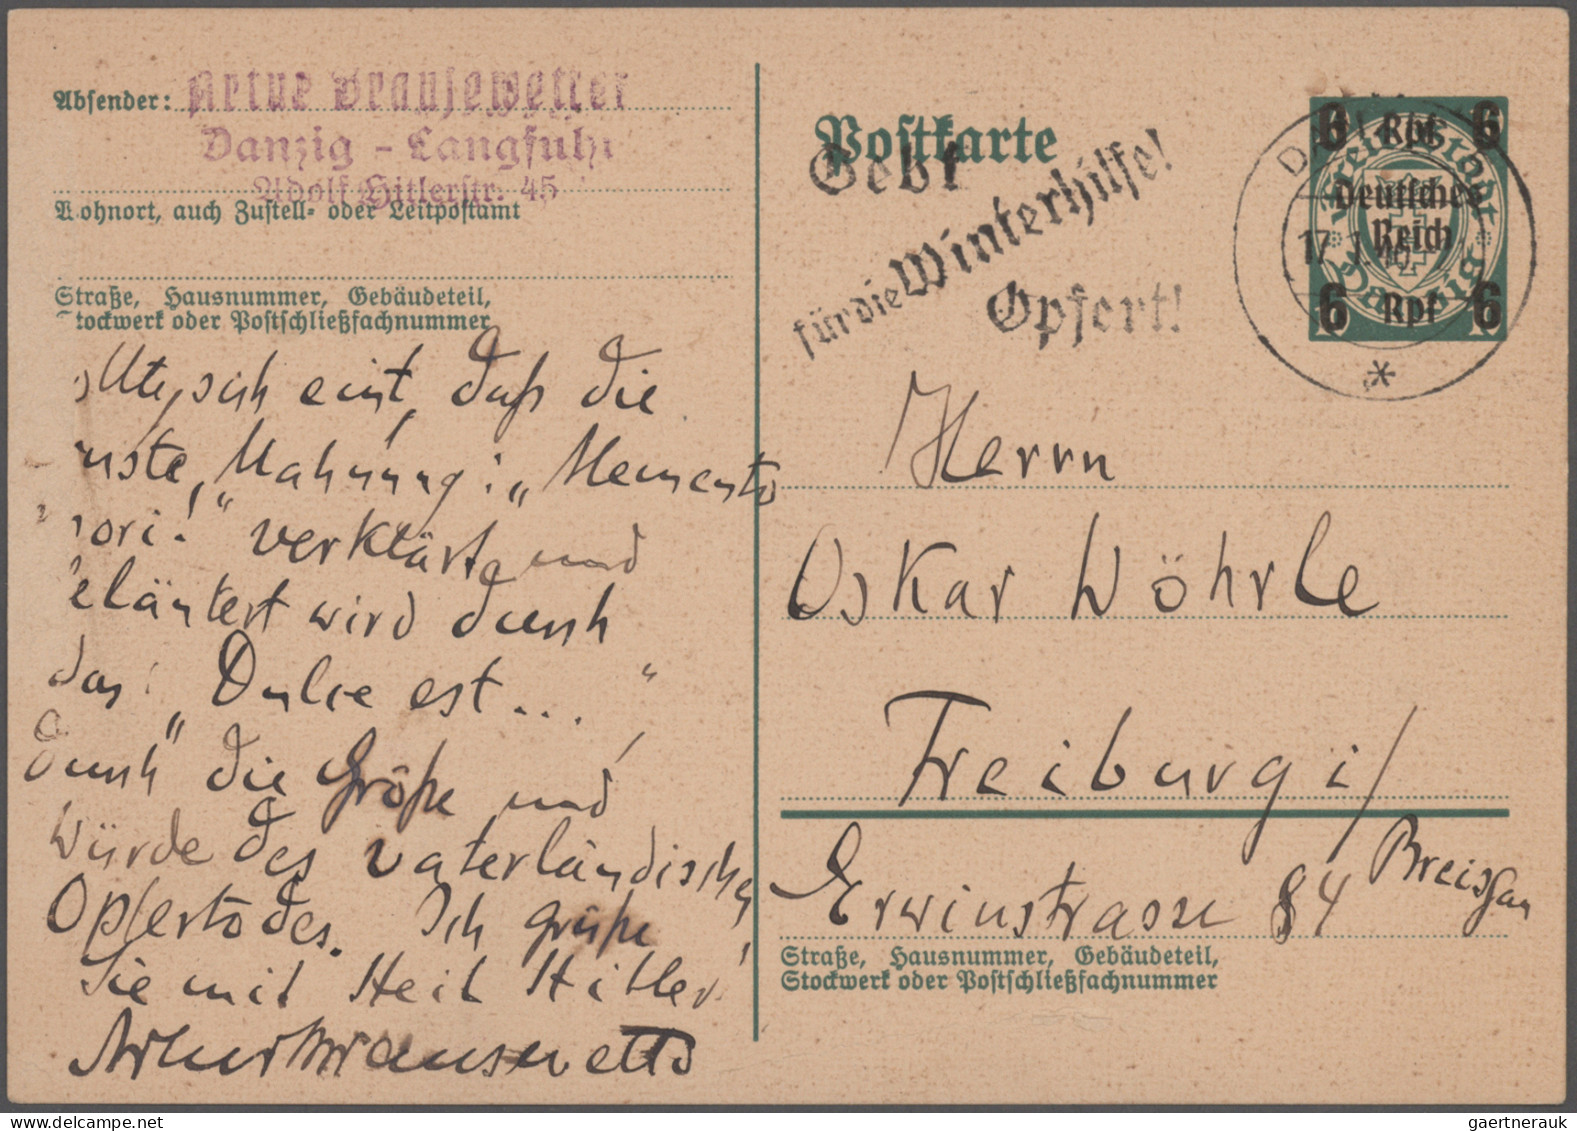 Thematics: Printing-writers, Authors: 1914/1943 (ca.), Bestand Von Einigen Hunde - Schriftsteller